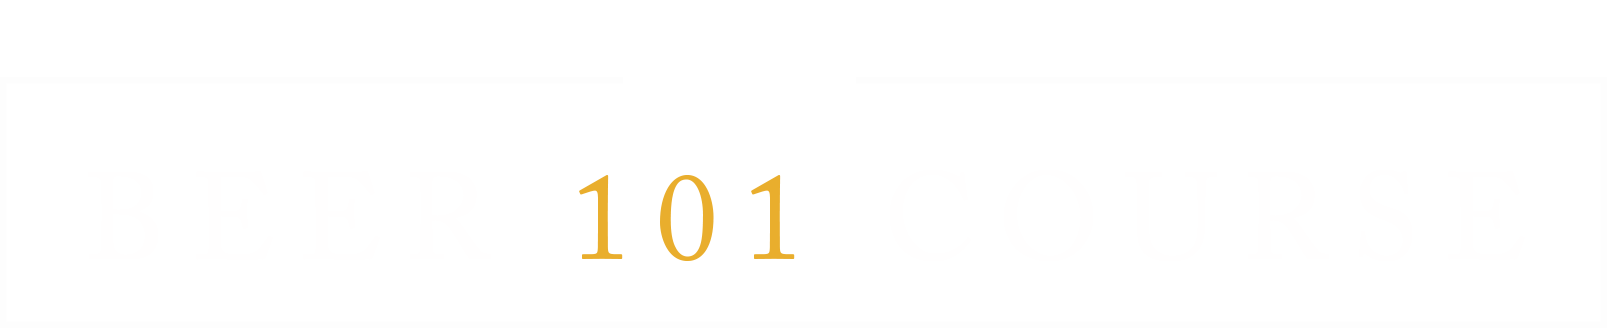 Craftbeer.com Beer 101 Course